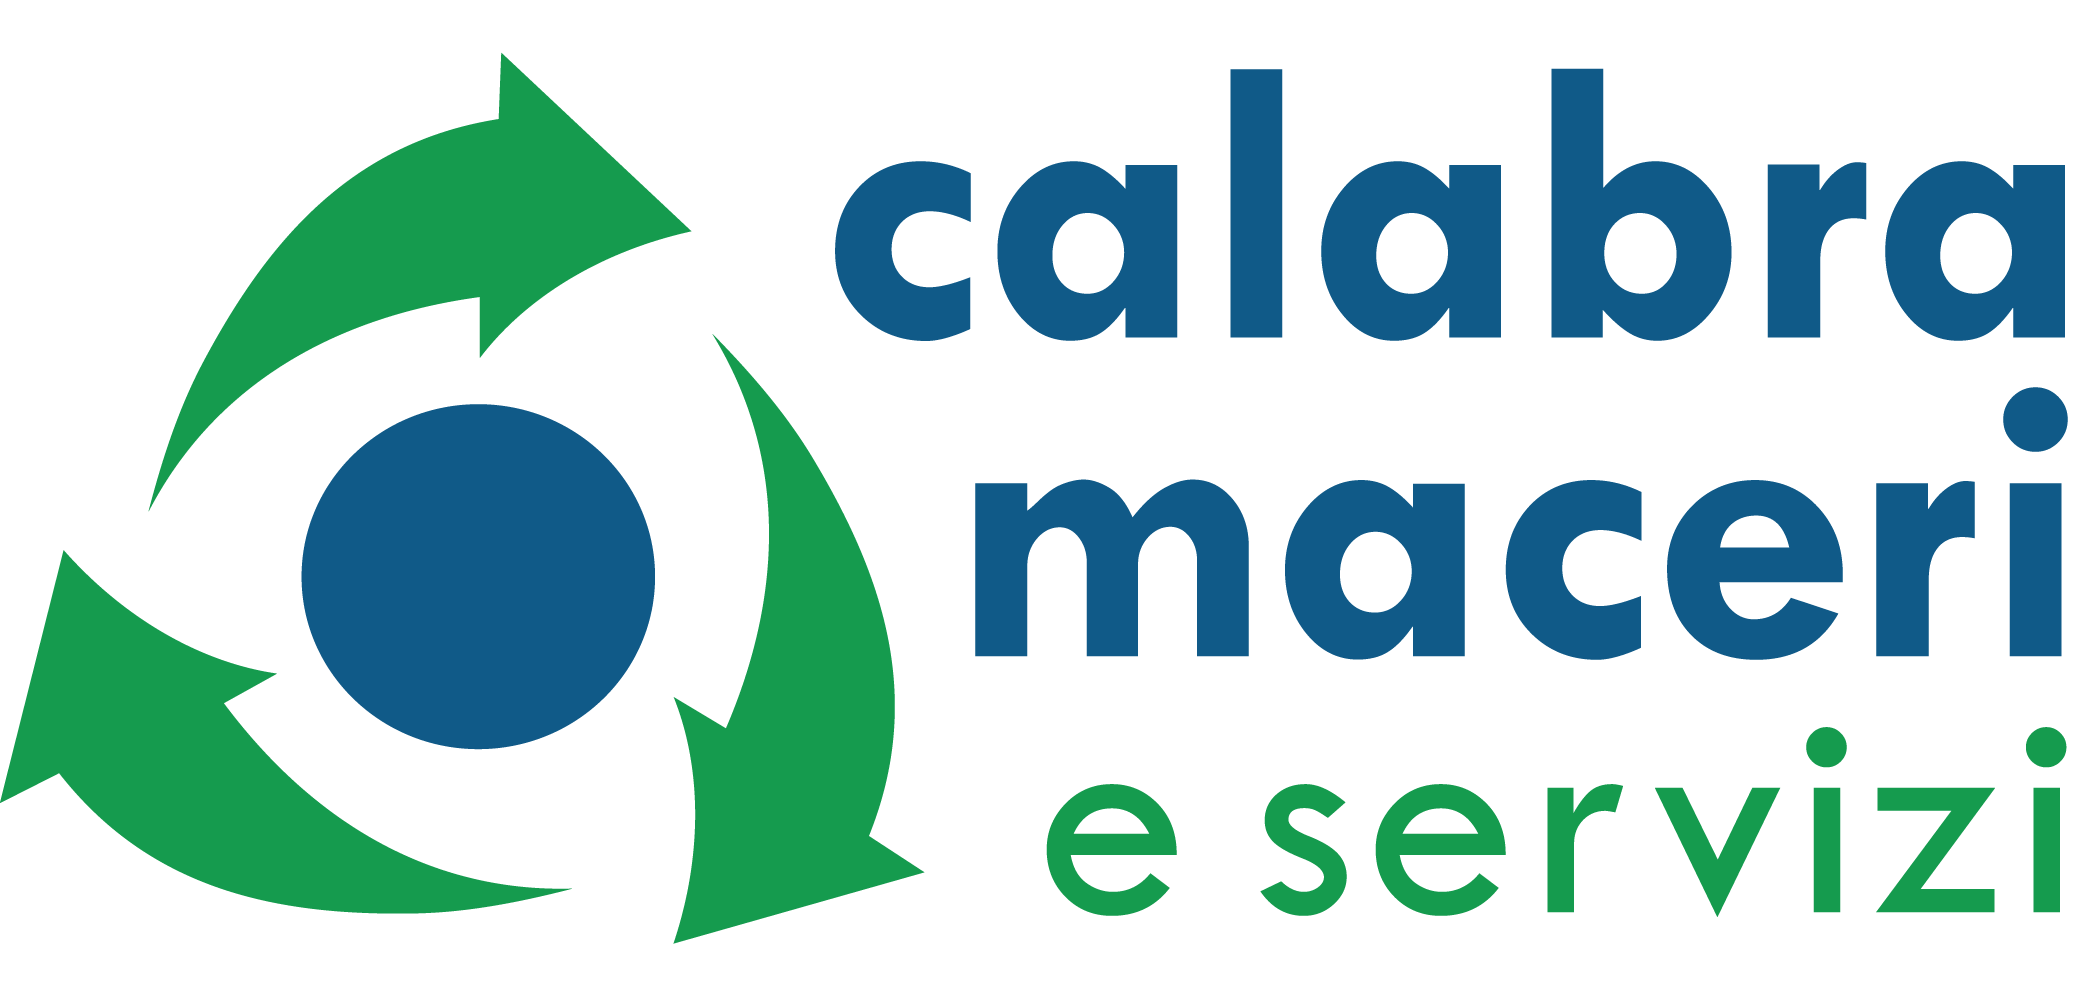 Calabra Maceri